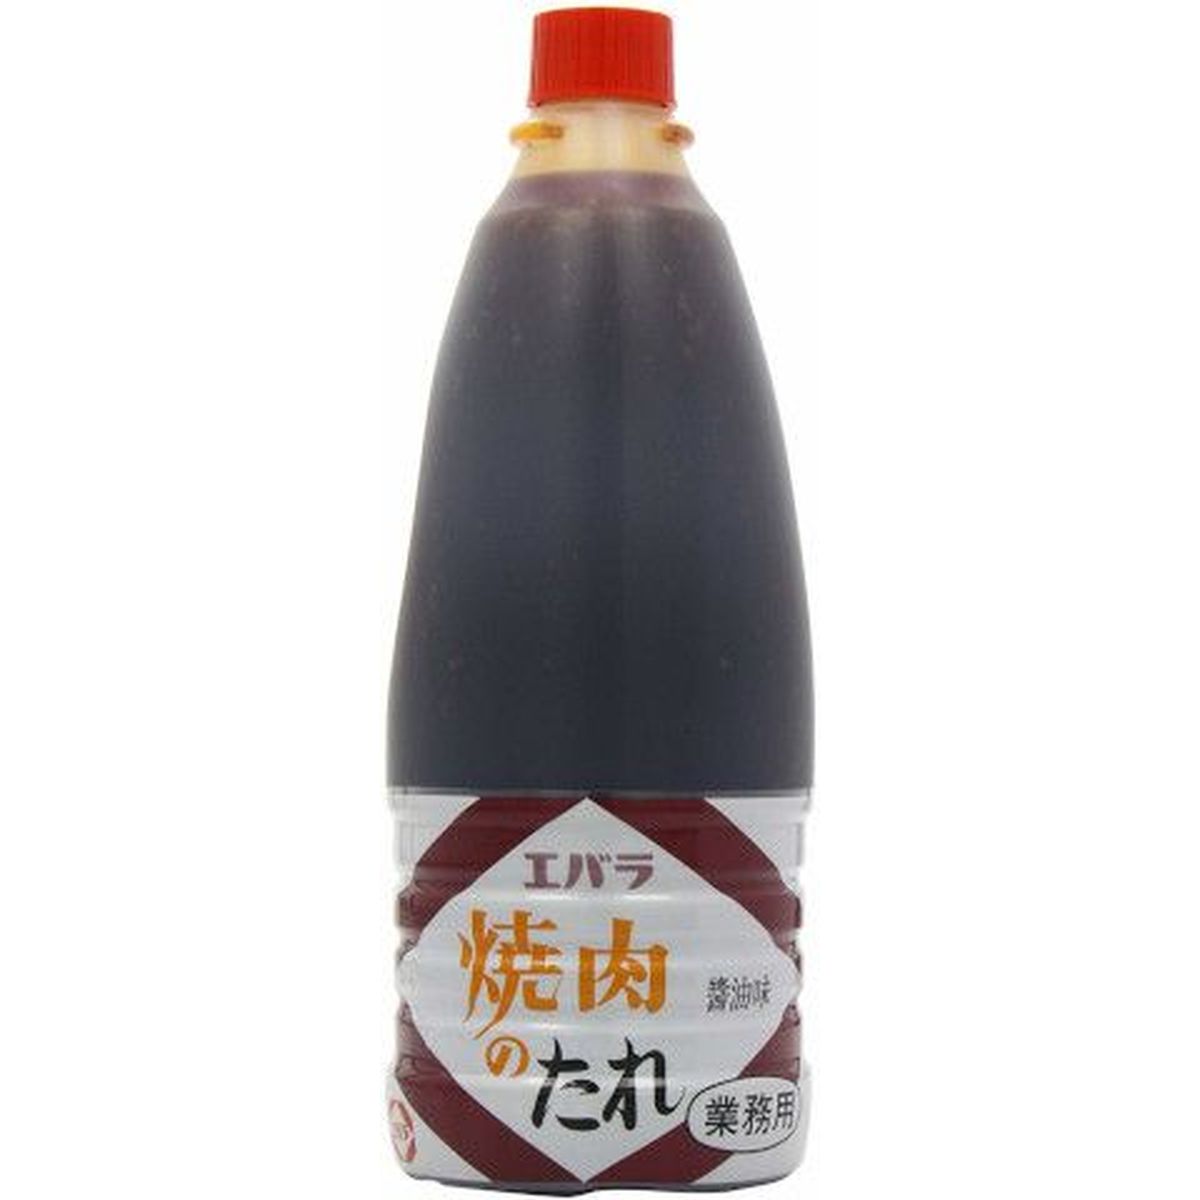 【6個入リ】エバラ 焼肉ノタレ 醤油味 1.6Kg